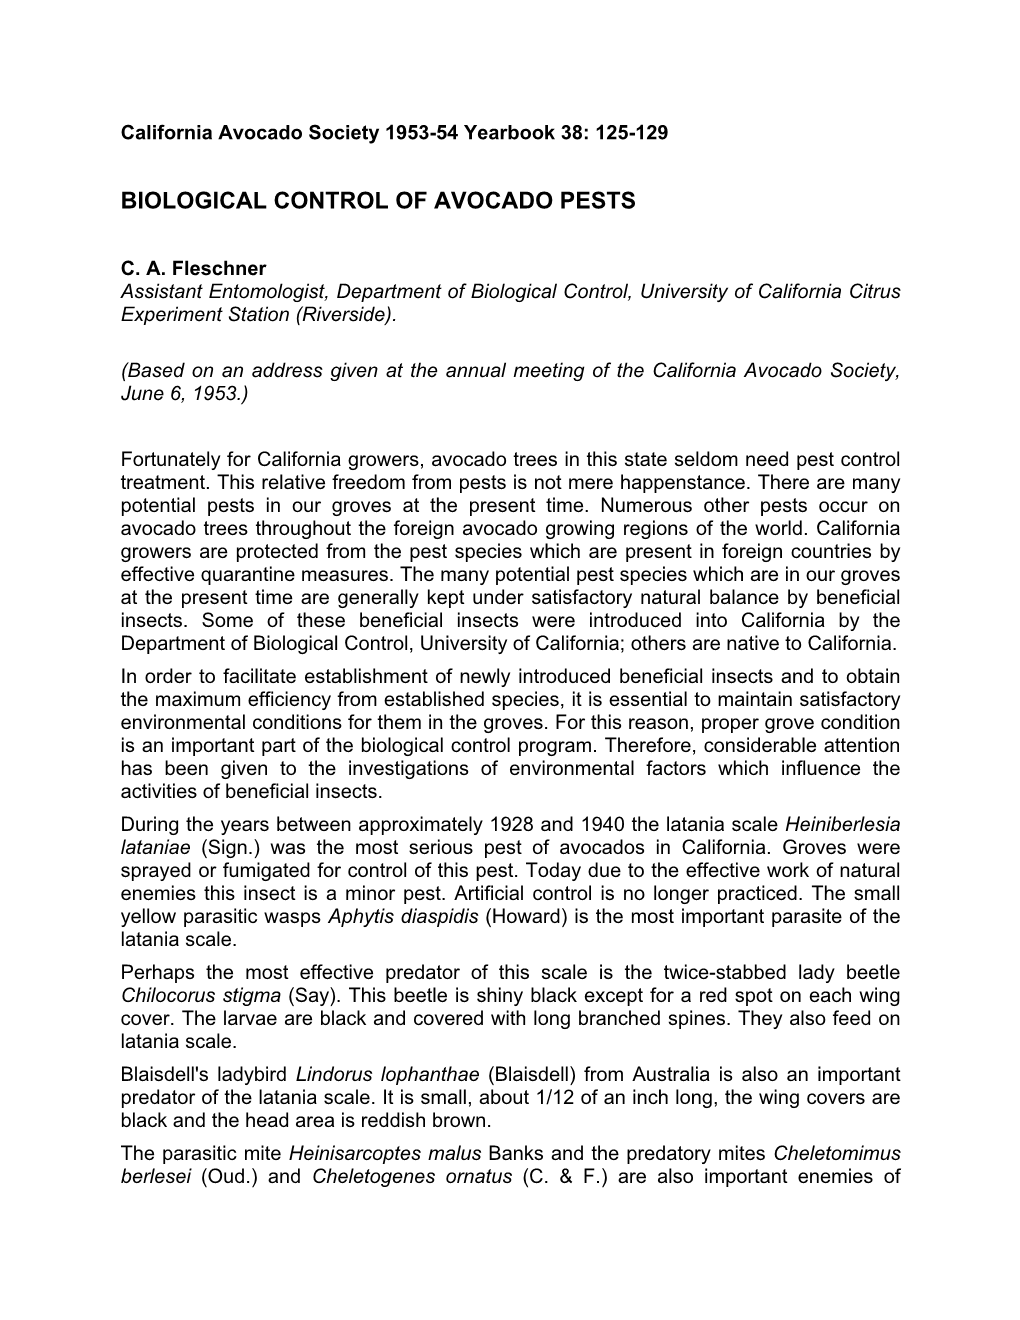 Biological Control of Avocado Pests